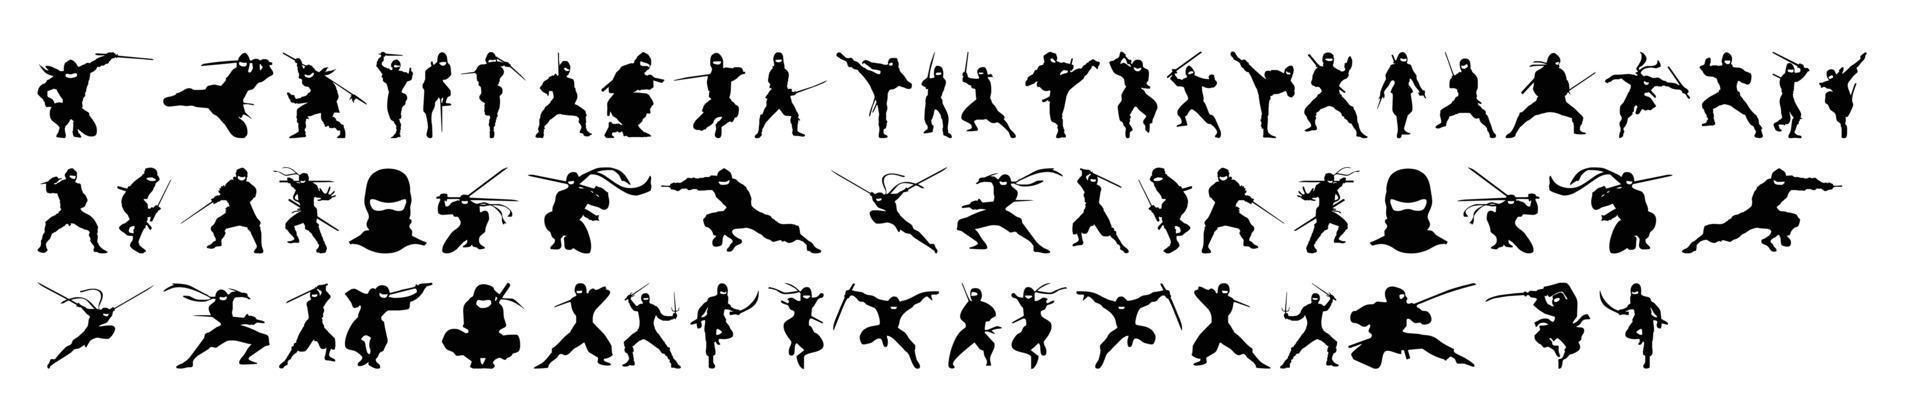 verzameling van ninja silhouet vectoren op een witte achtergrond